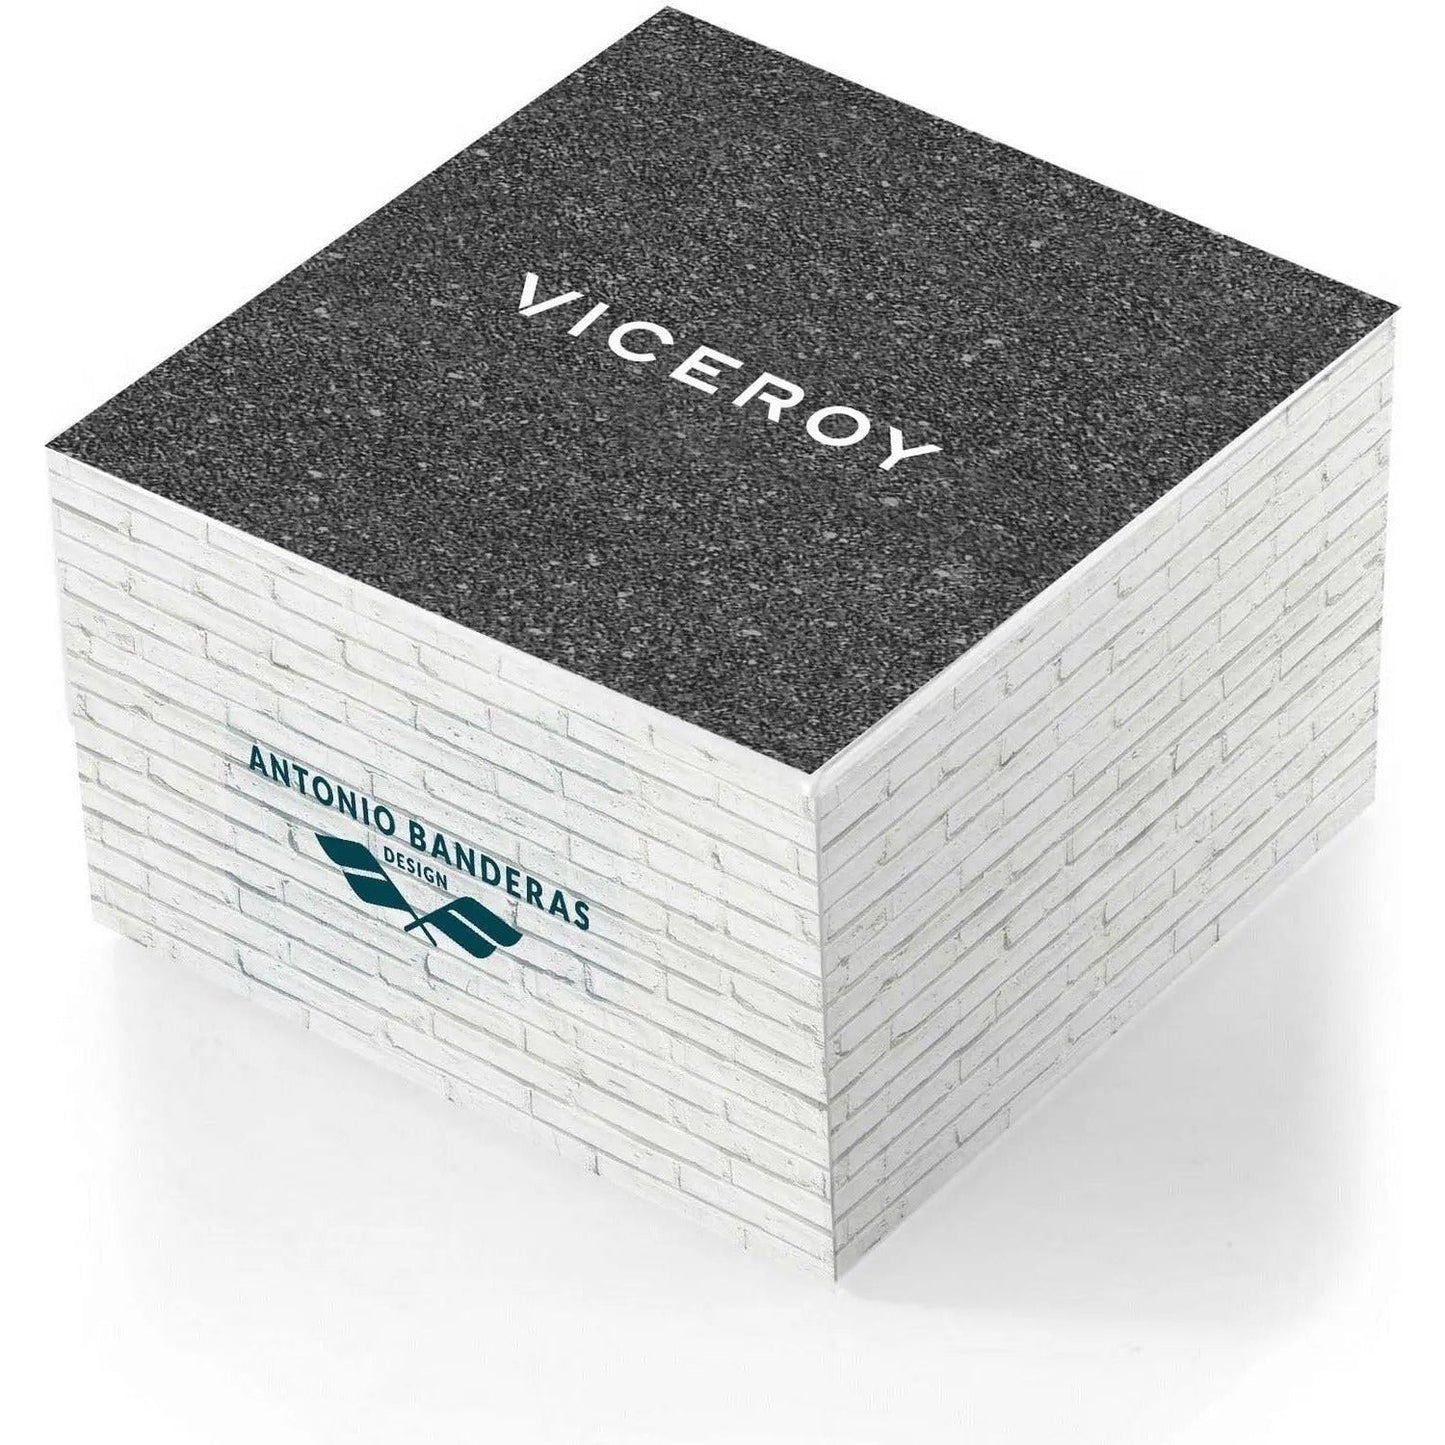 VICEROY WATCHES VICEROY Mod. 401053-57 viceroy-mod-401053-57 WATCHES VICEROY-WATCHES-VICEROY-Mod.-401053-57-McRichard-Designer-Brands-1682947110.jpg